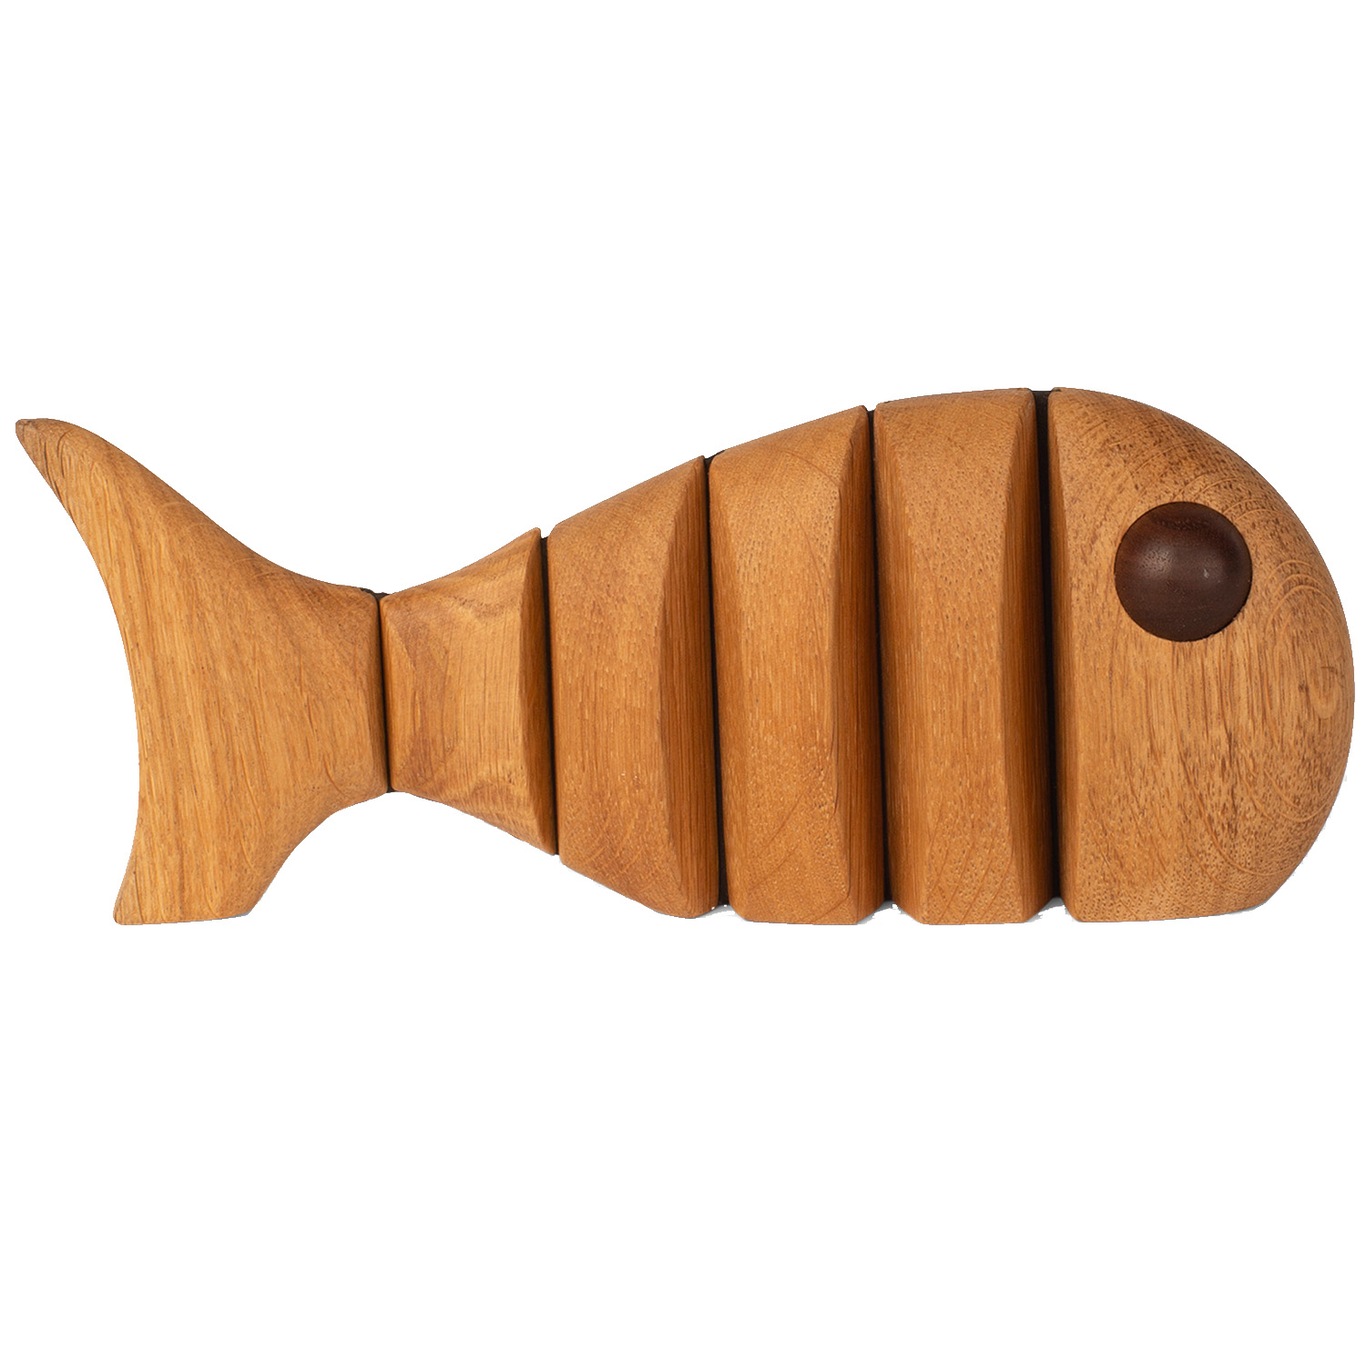 The Wood Fish Träfigur 22 cm